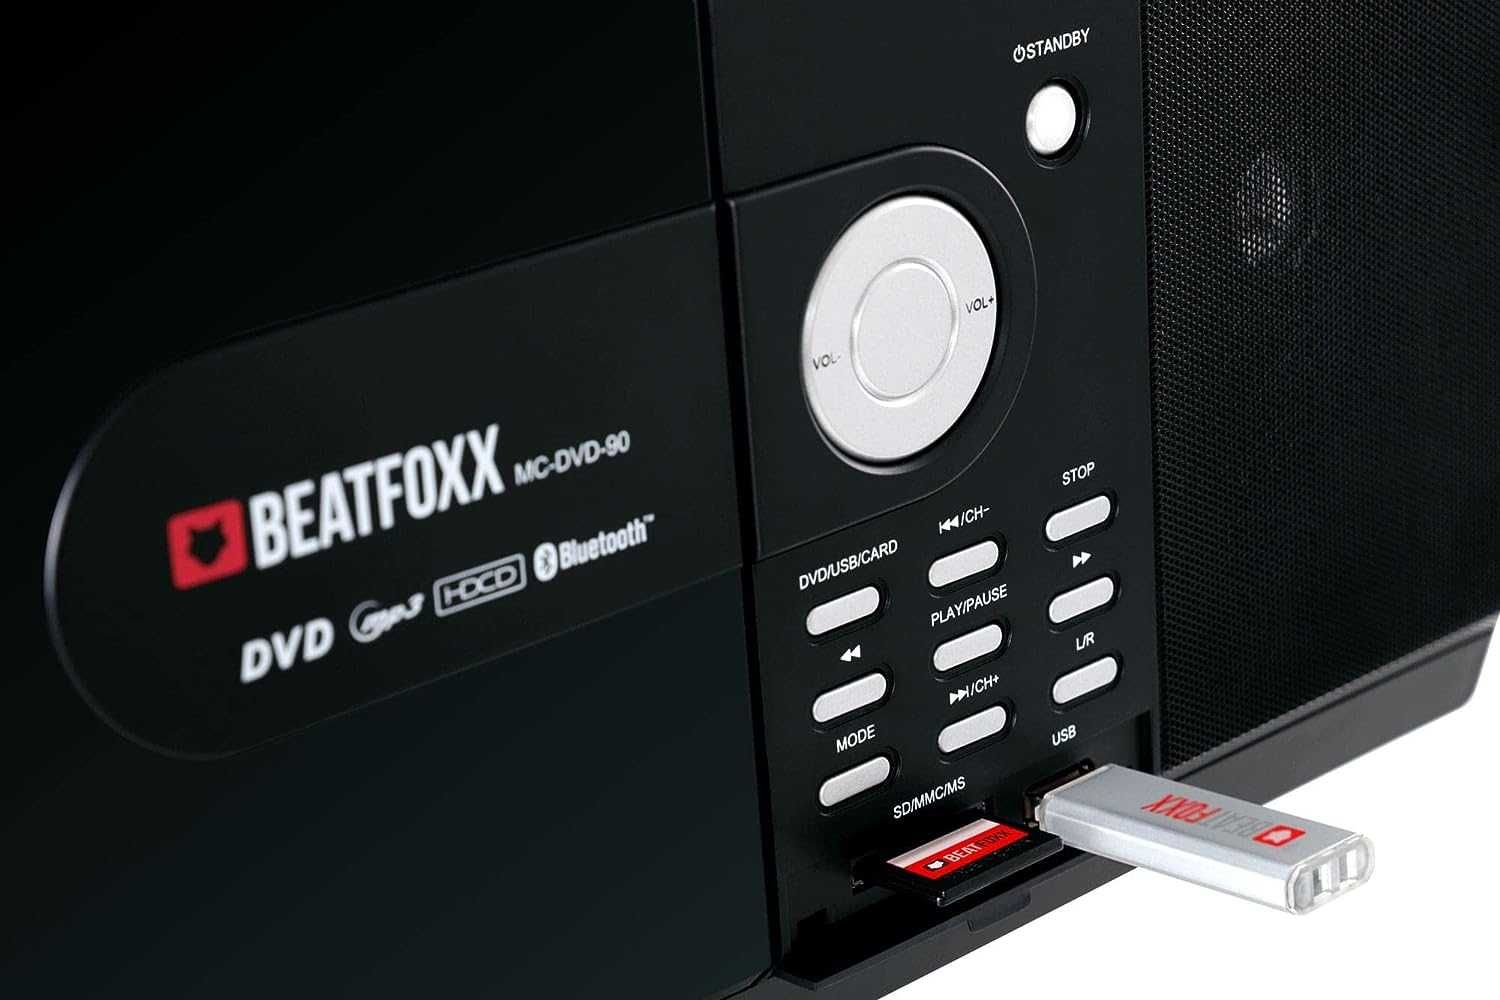 Beatfoxx MC-DVD-90 Design zestaw stereo